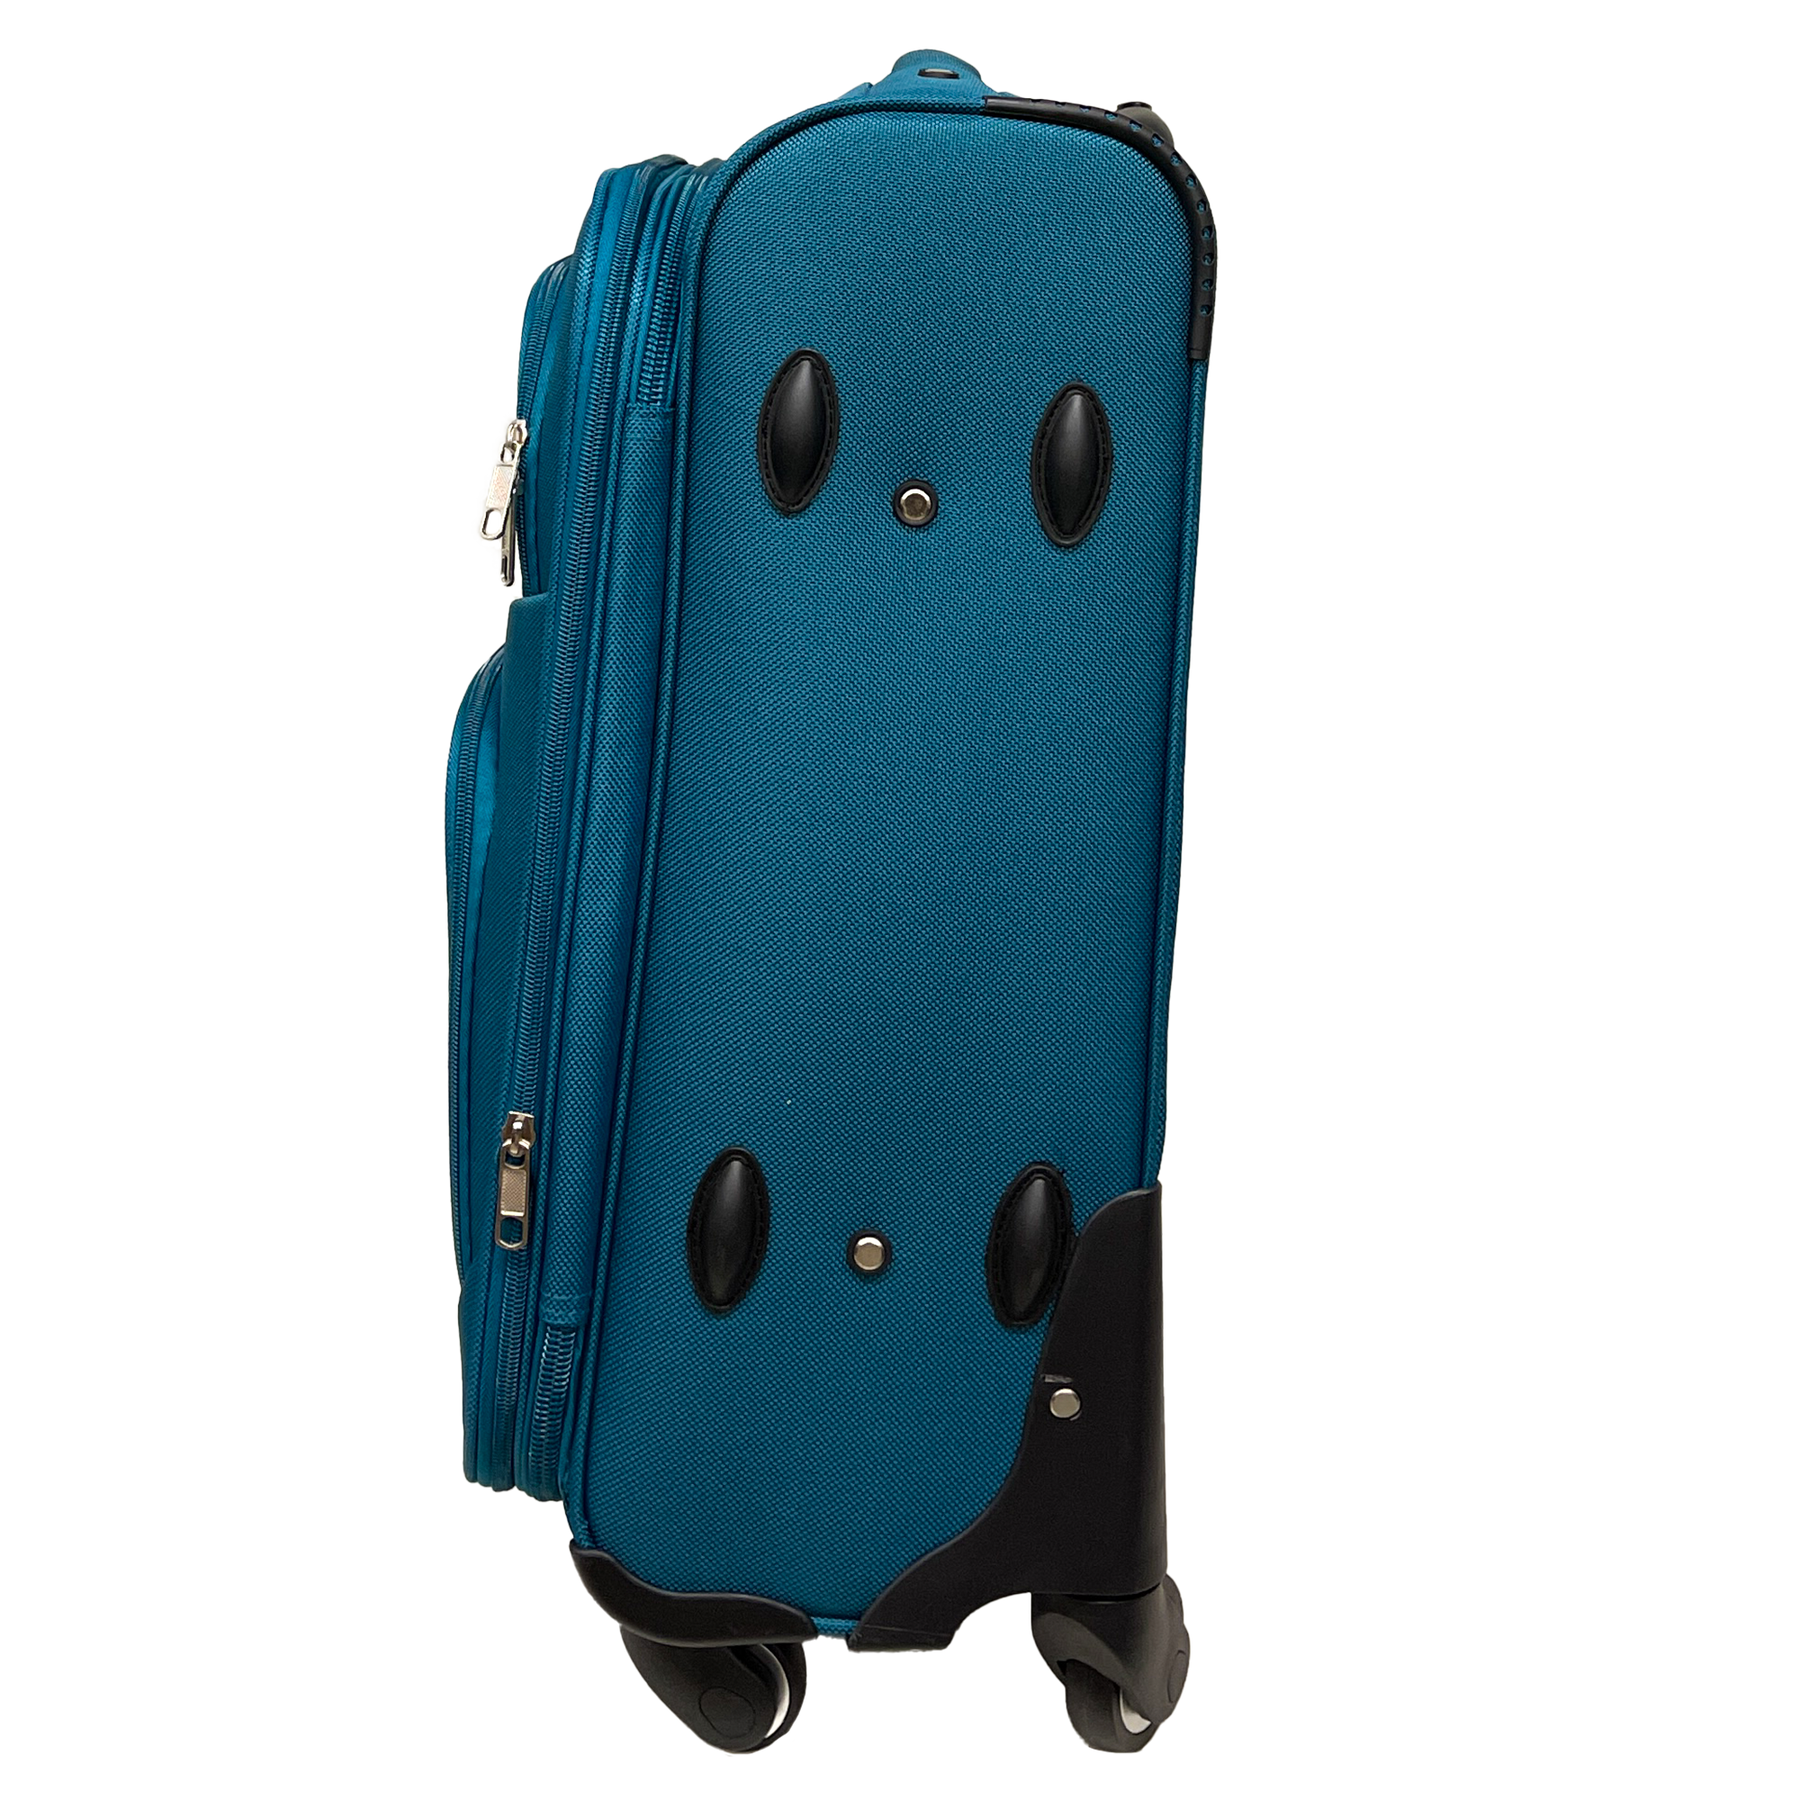 Lagatų nustatymas Pusiau -ligos plečiamas rankinis lagaminas + Vidutinis lagaminas - smūgiams atspari audinys ir atspari